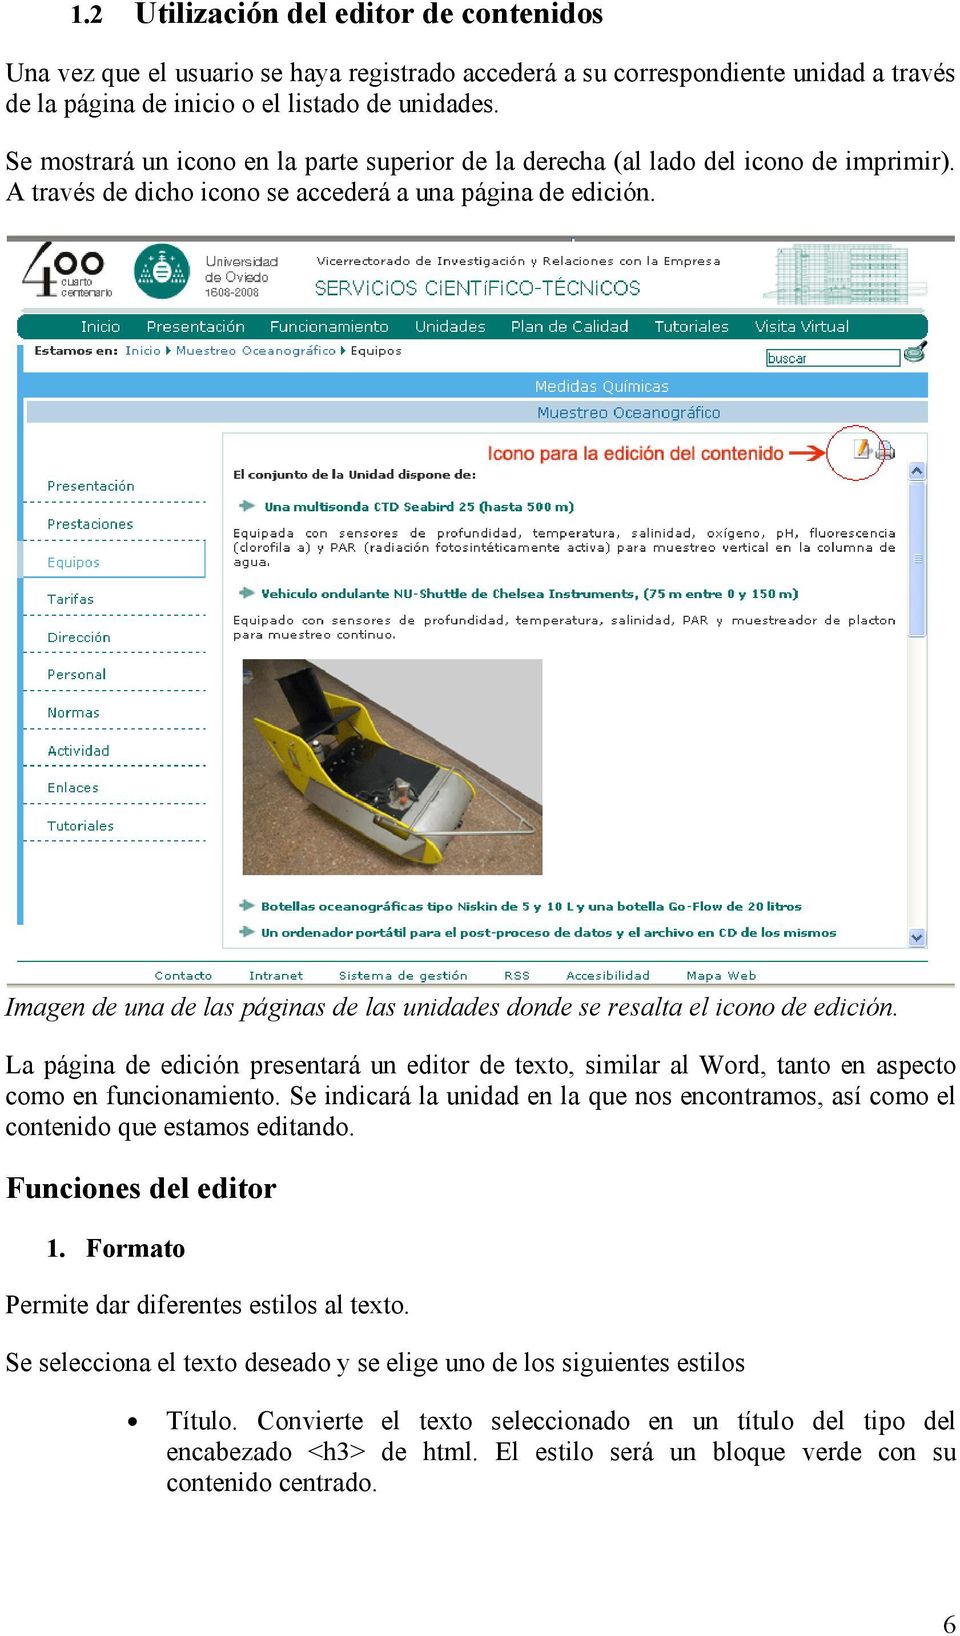 Imagen de una de las páginas de las unidades donde se resalta el icono de edición. La página de edición presentará un editor de texto, similar al Word, tanto en aspecto como en funcionamiento.